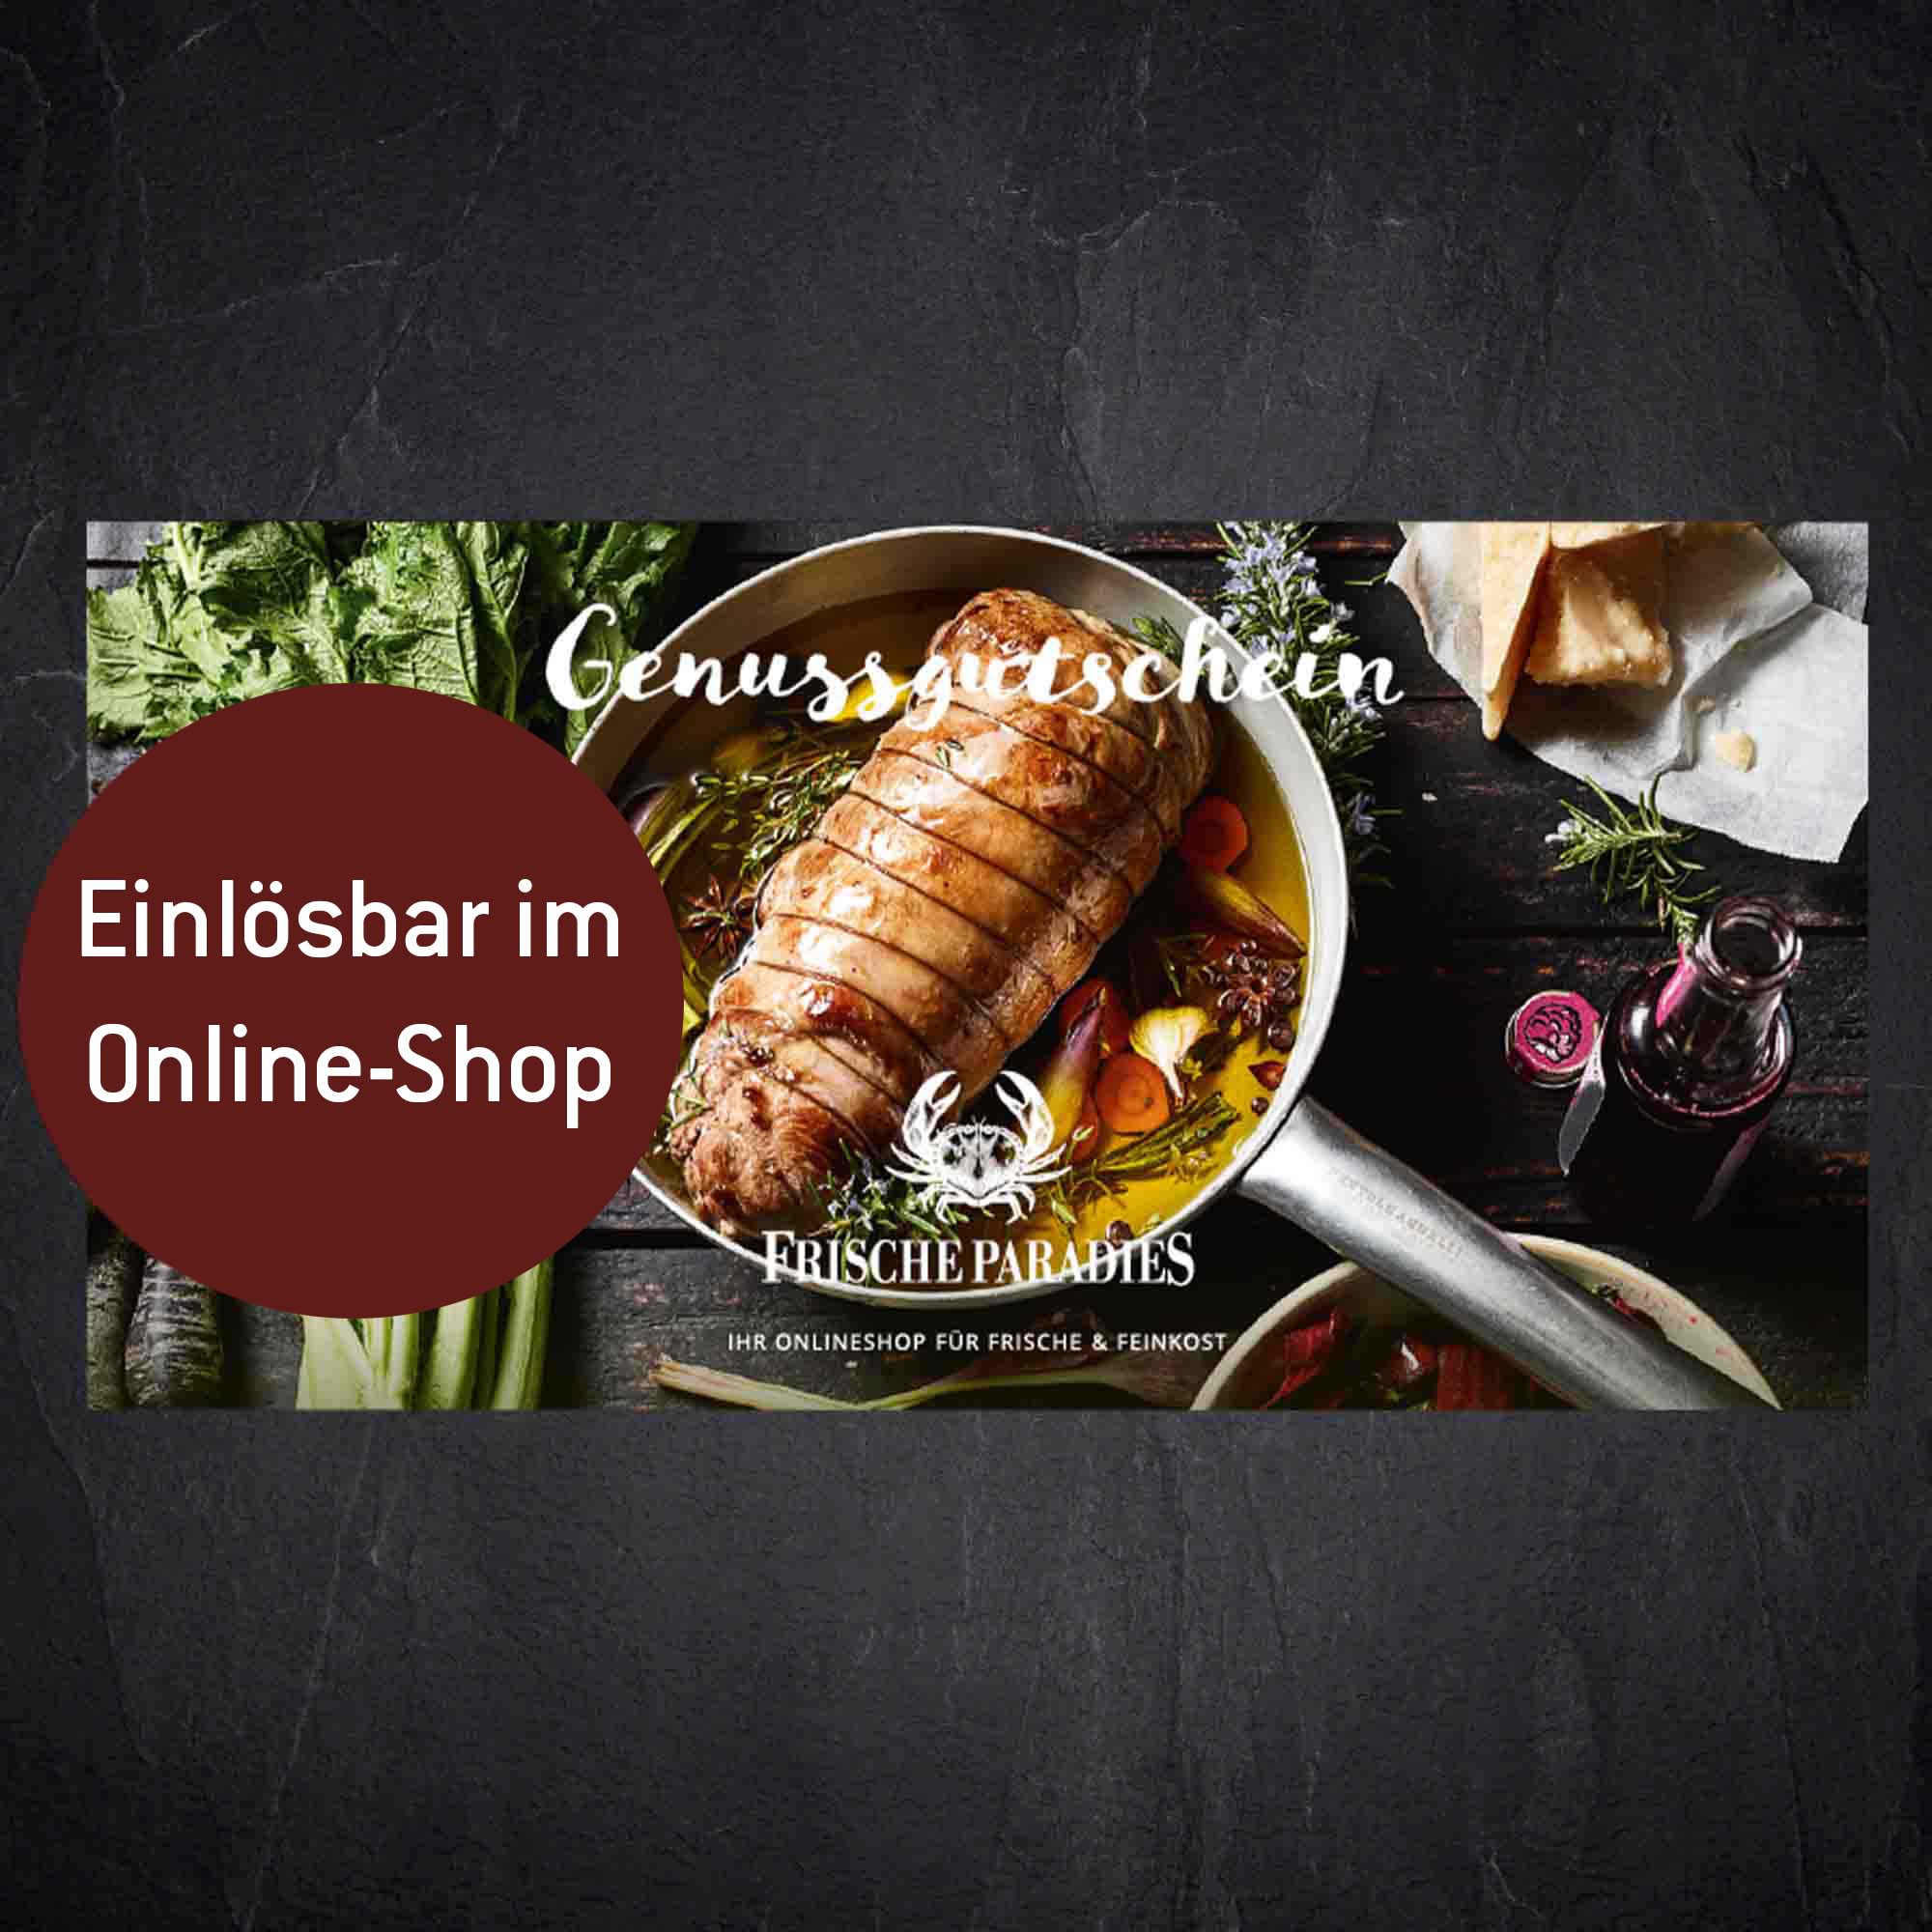 100 Euro PDF-Gutschein - Einlösbar im Online-Shop (Versand per eMail)